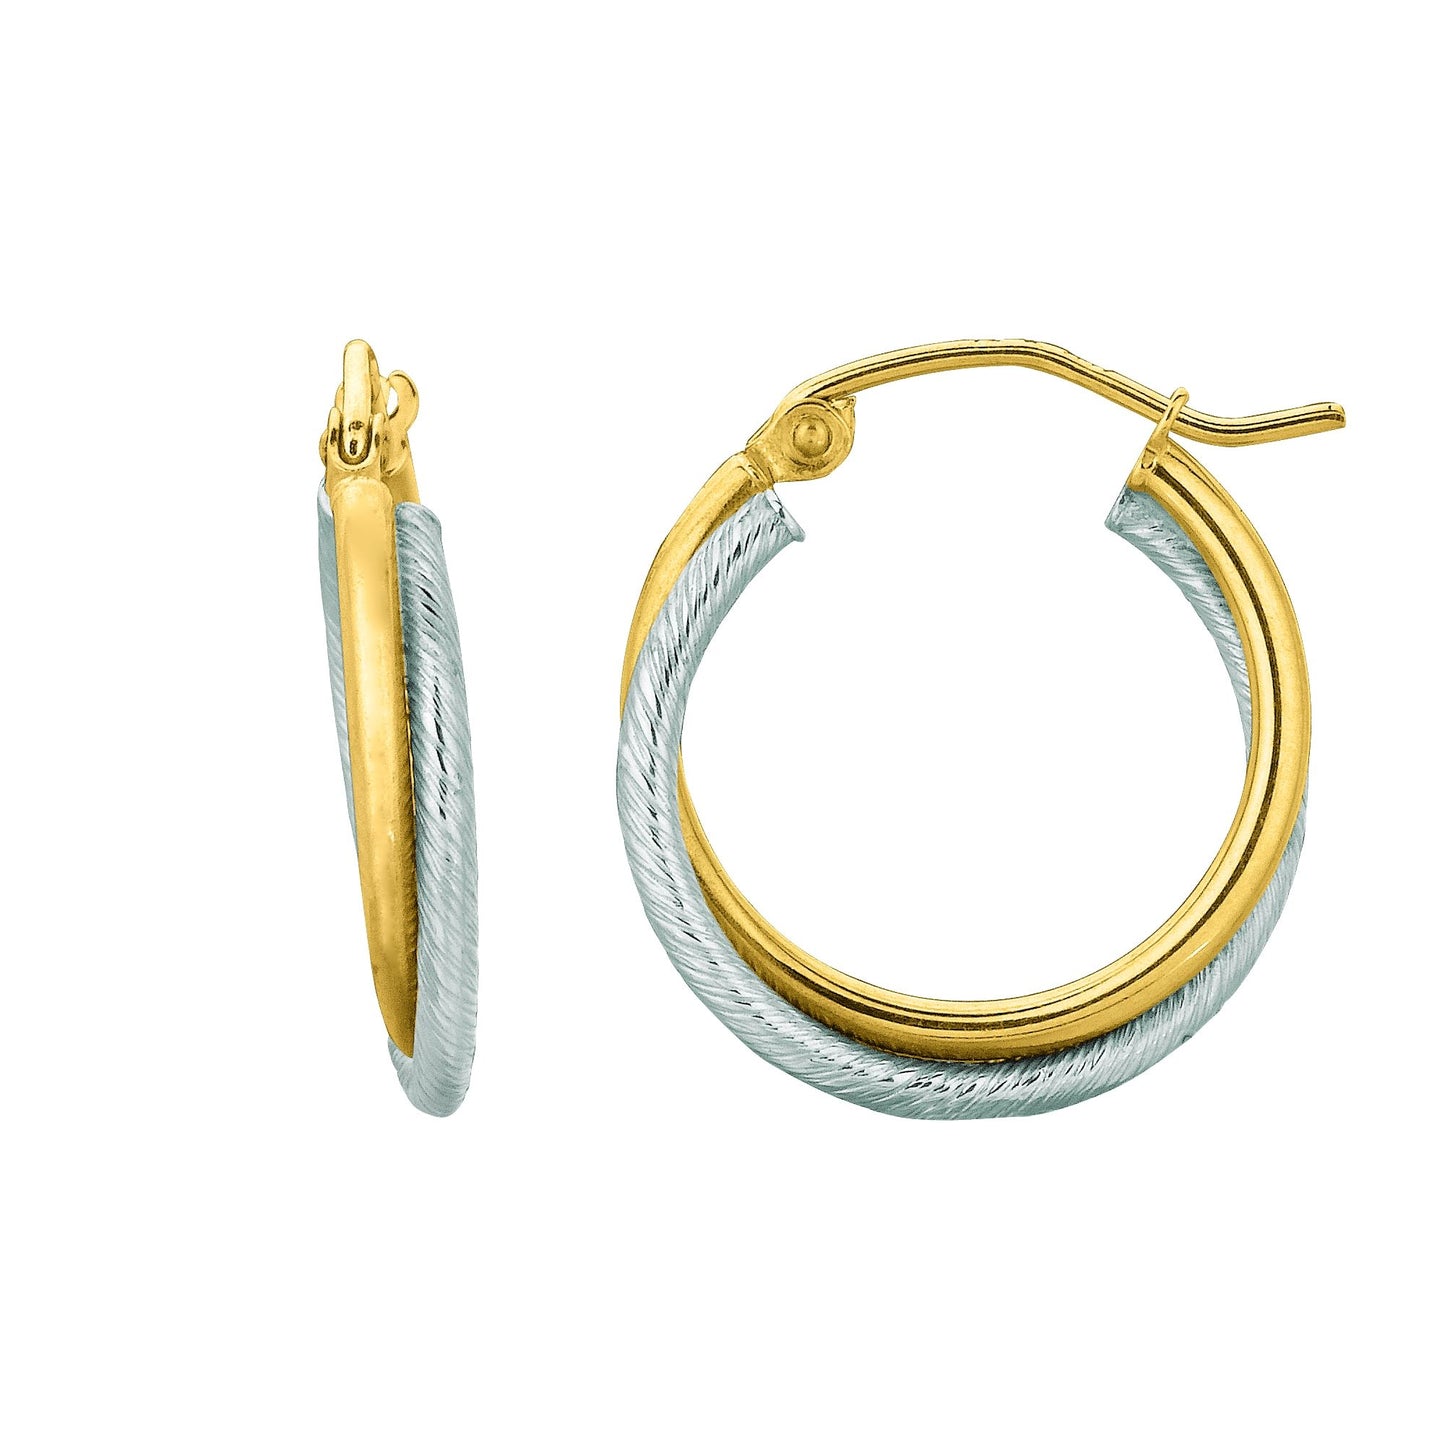 14K Gold Yellow & Double Row Polished Hoop Earring